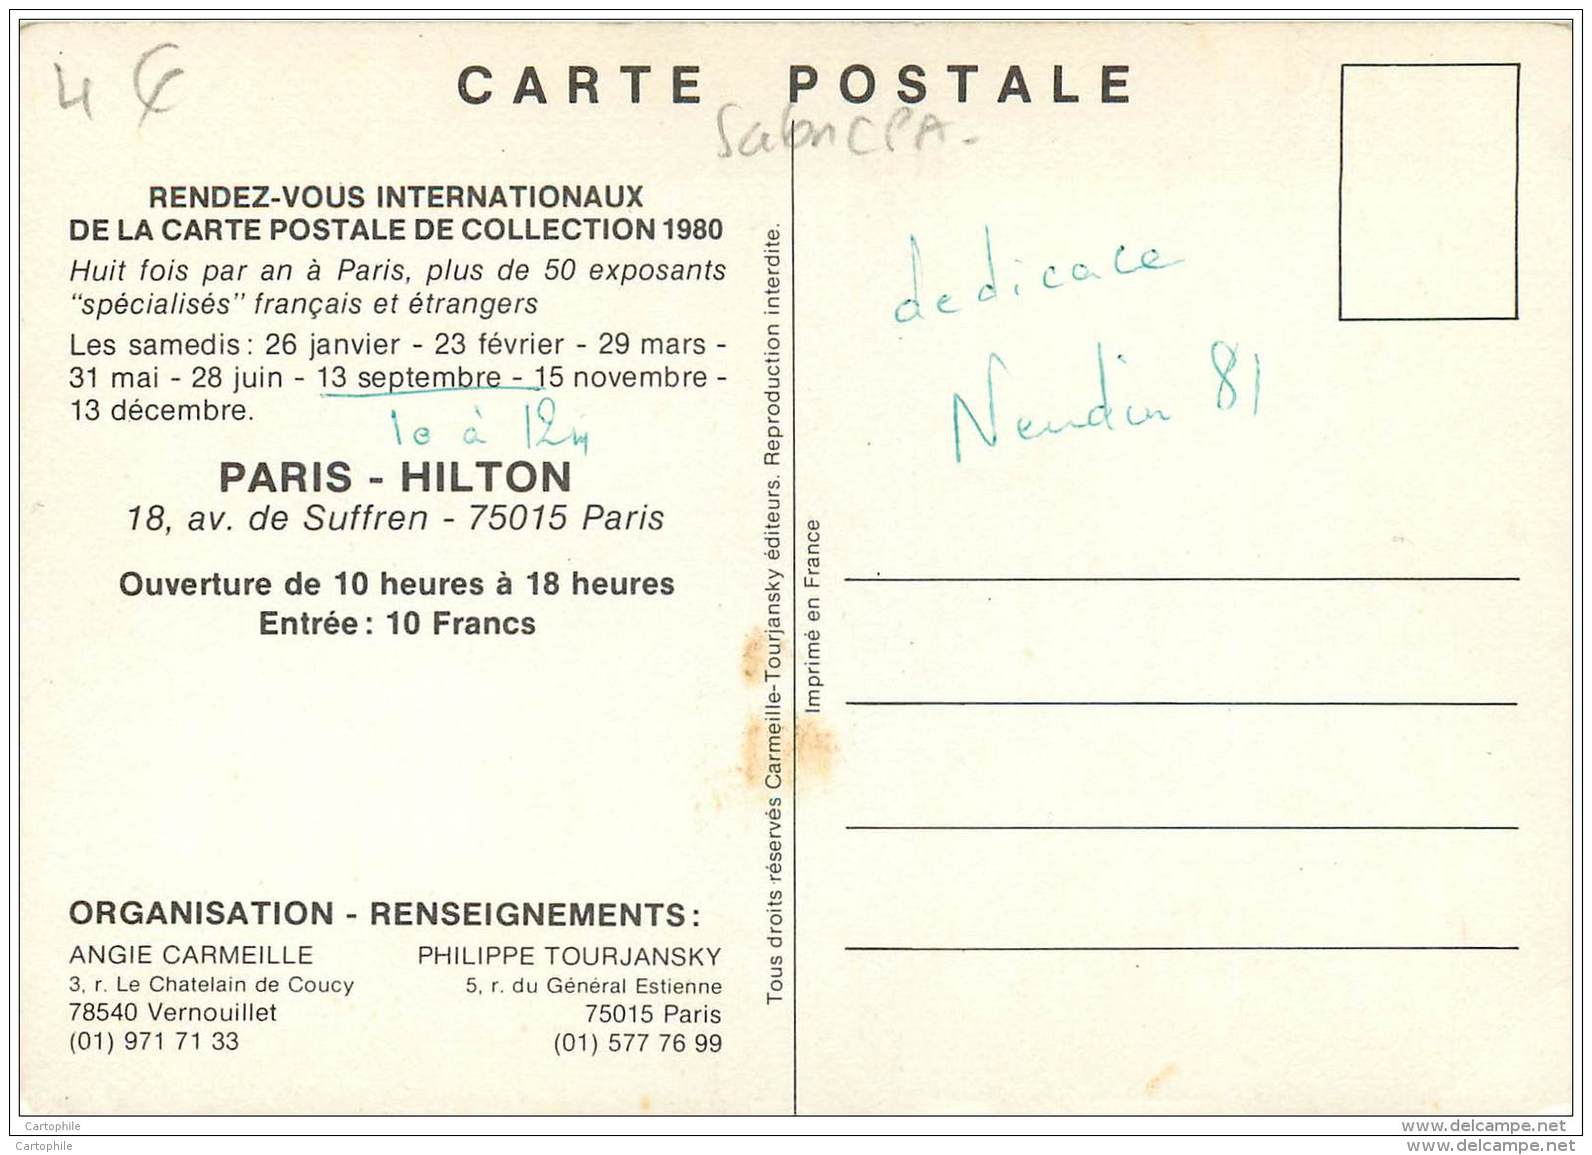 RDV Internationnaux De La Carte Postale De Collection 1980 A L'hotel De Paris Hilton 18 Av Suffren - Borse E Saloni Del Collezionismo